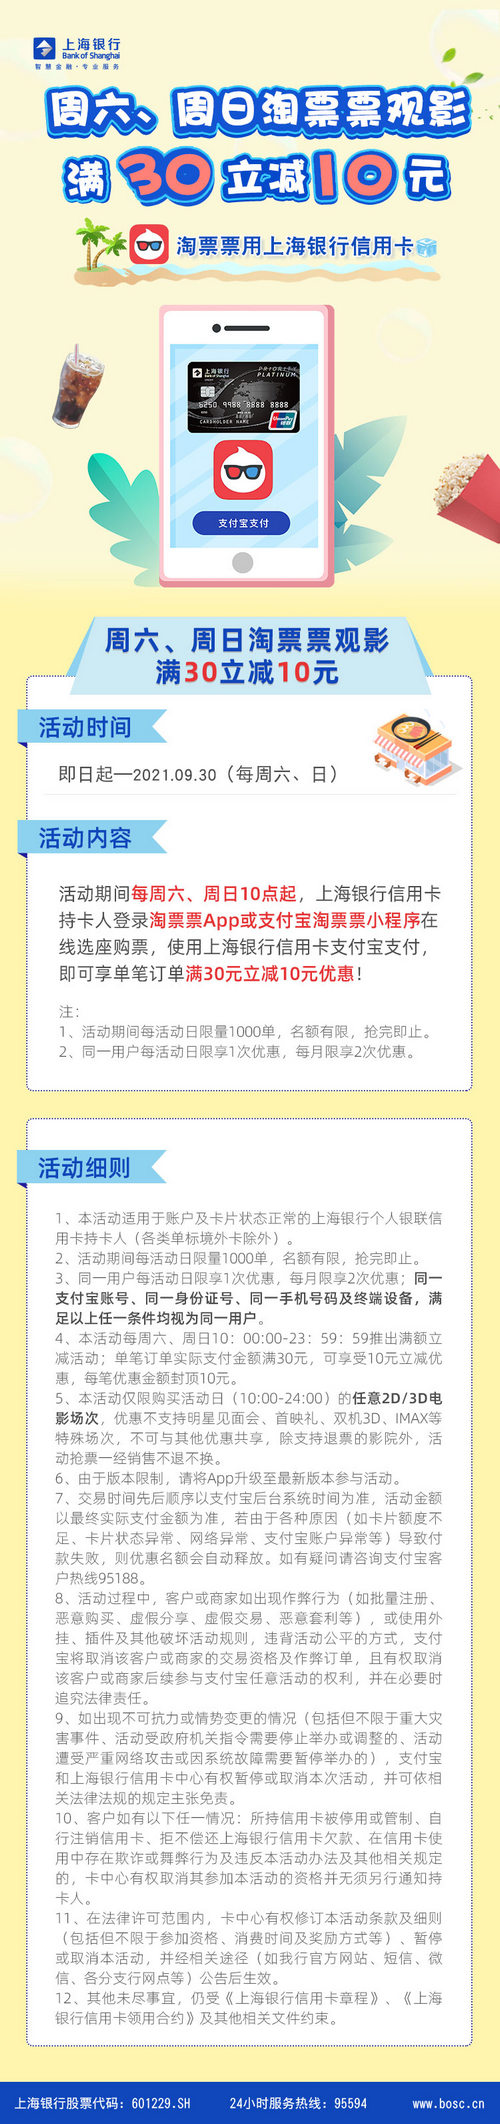 上海银行卡【移动支付】每周六、周日淘票票观影满30立减10元!